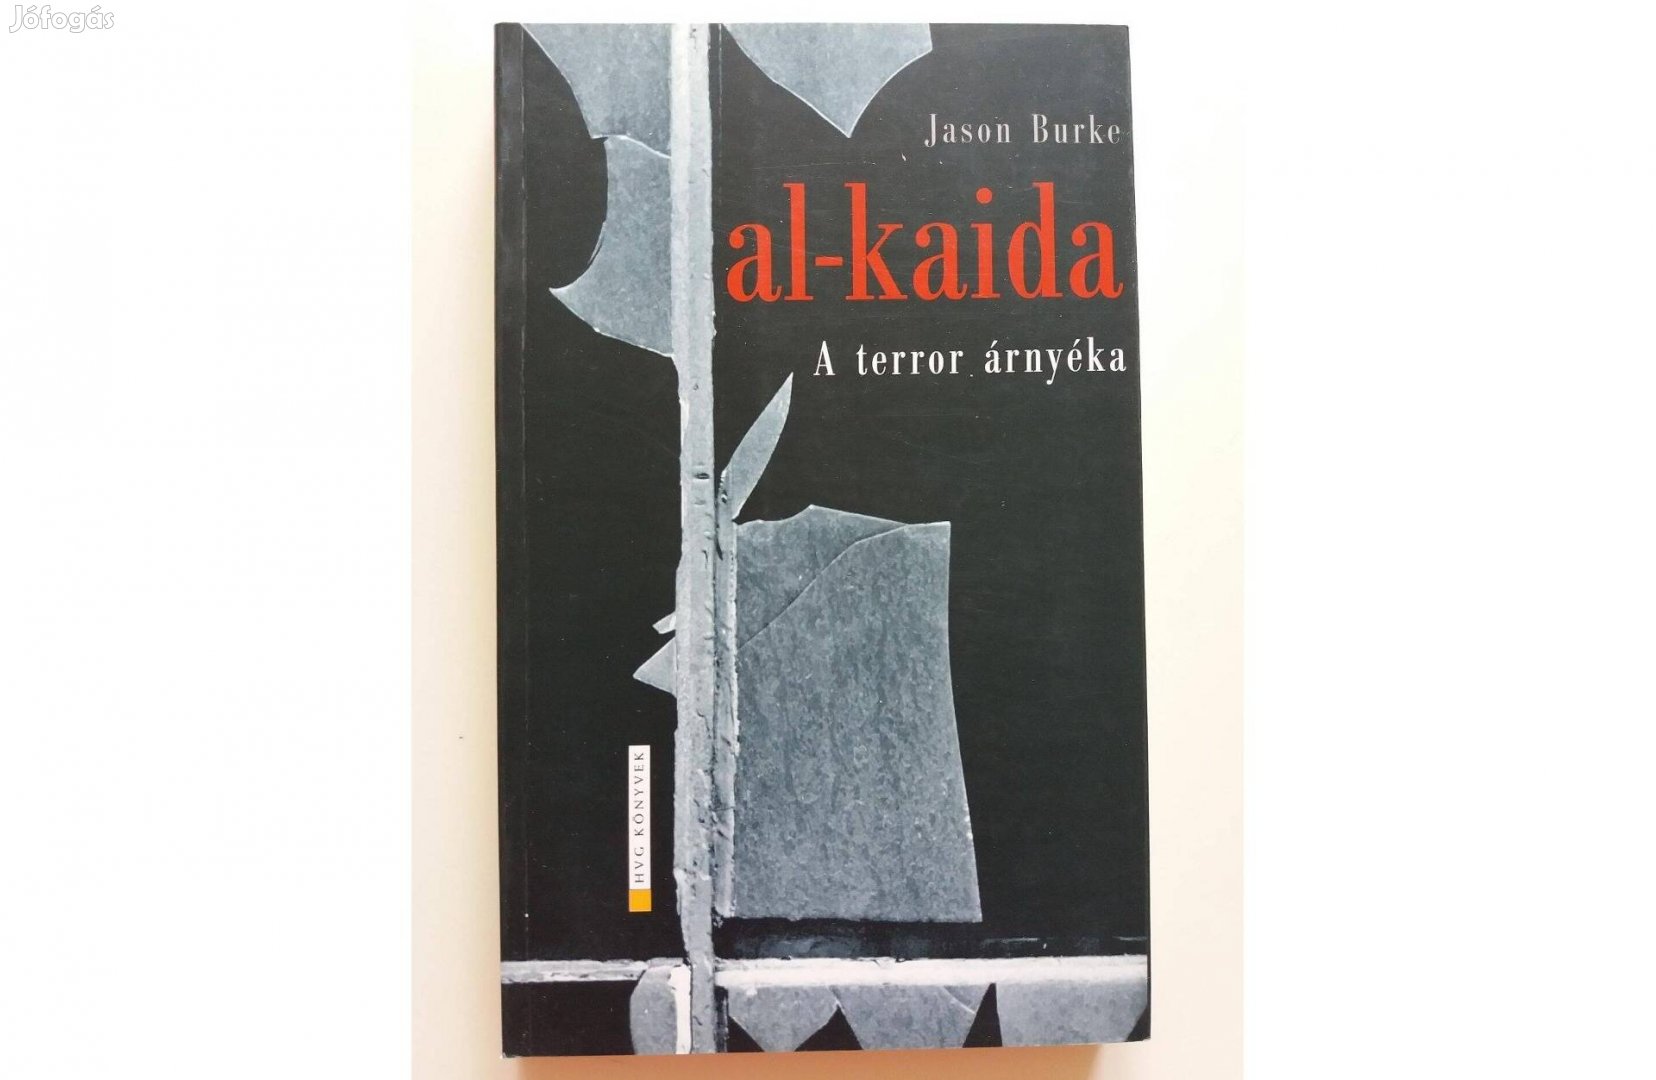 Jason Burke: al-kaida (A terror árnyéka)